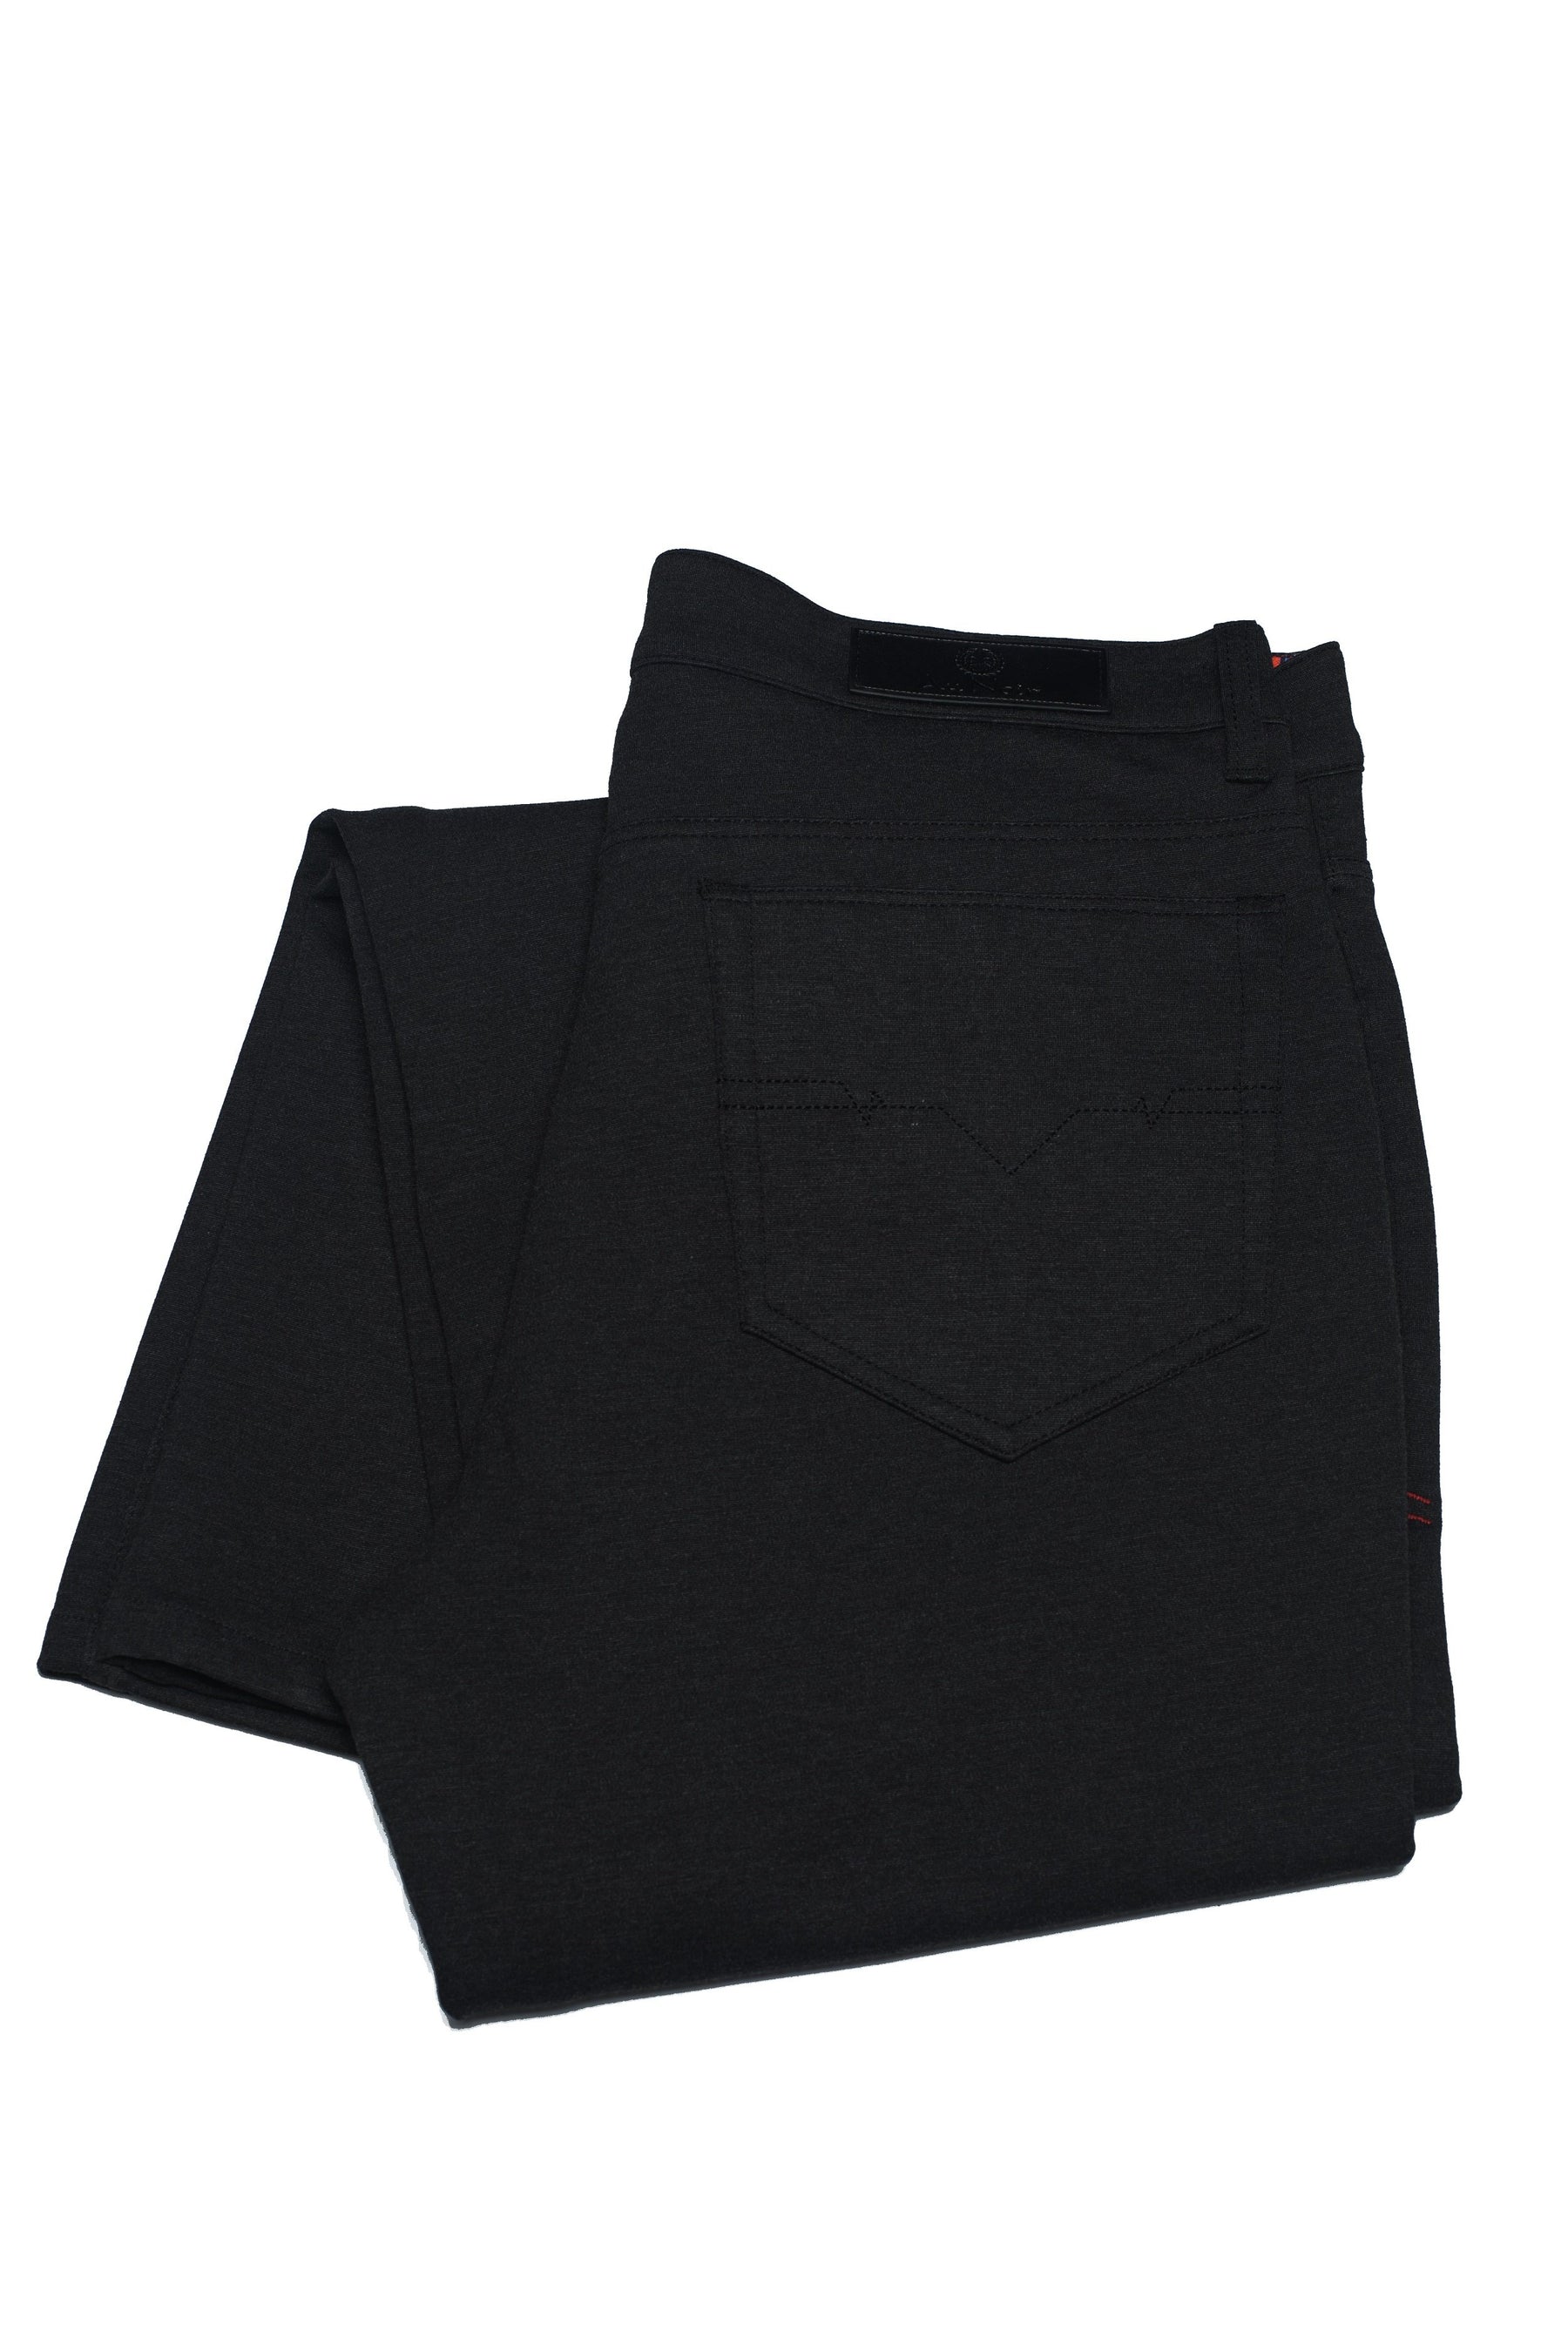 Pantalon Au Noir - WINDCHESTER black